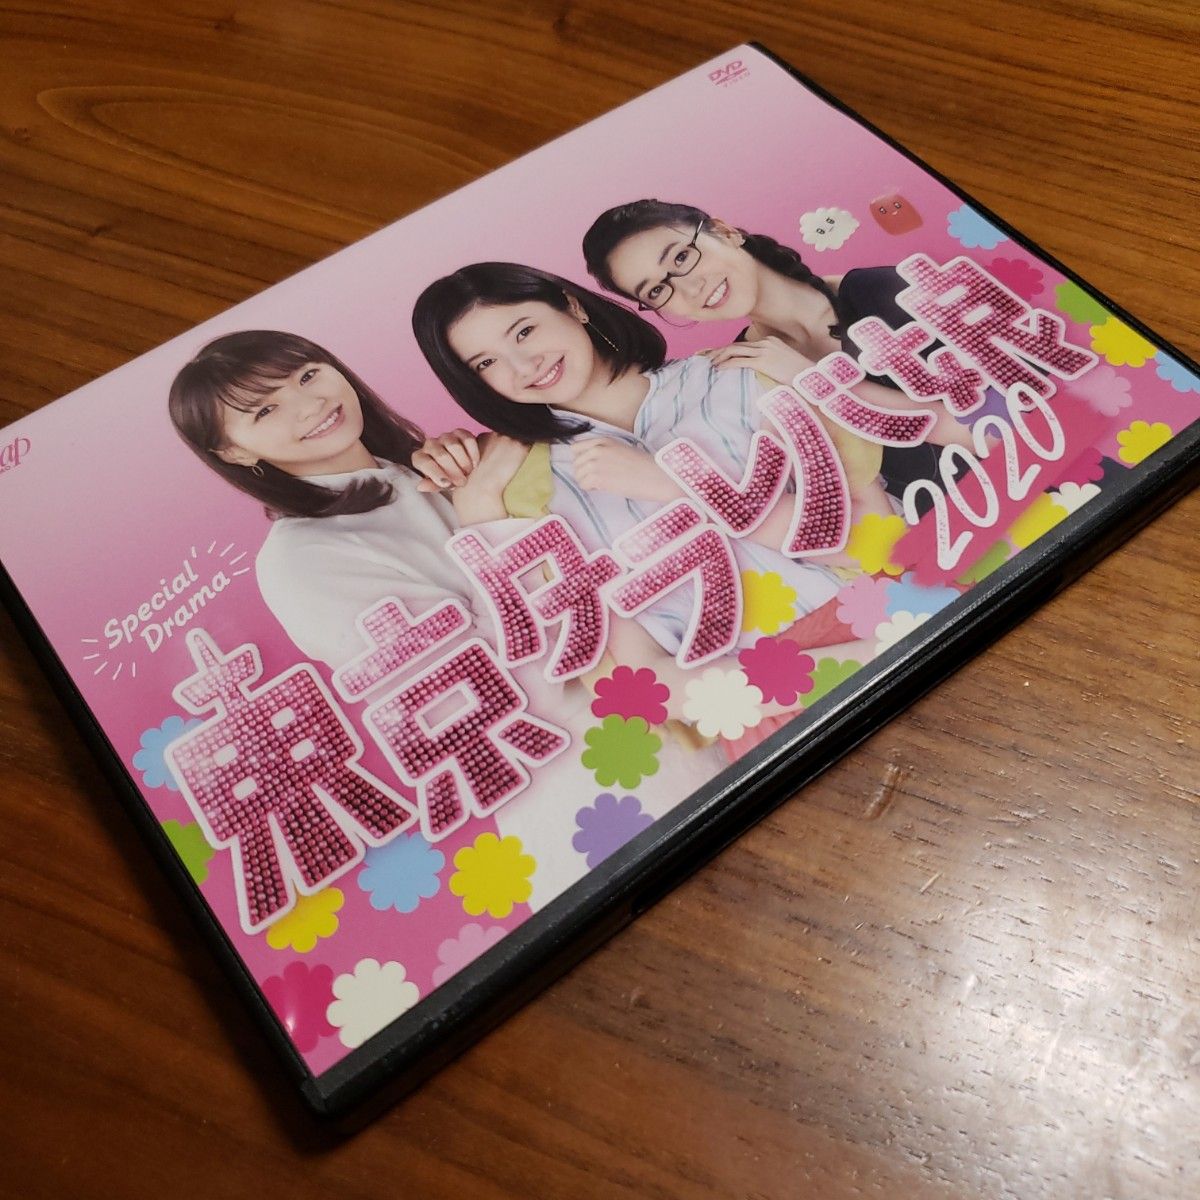 東京タラレバ娘2020  DVD